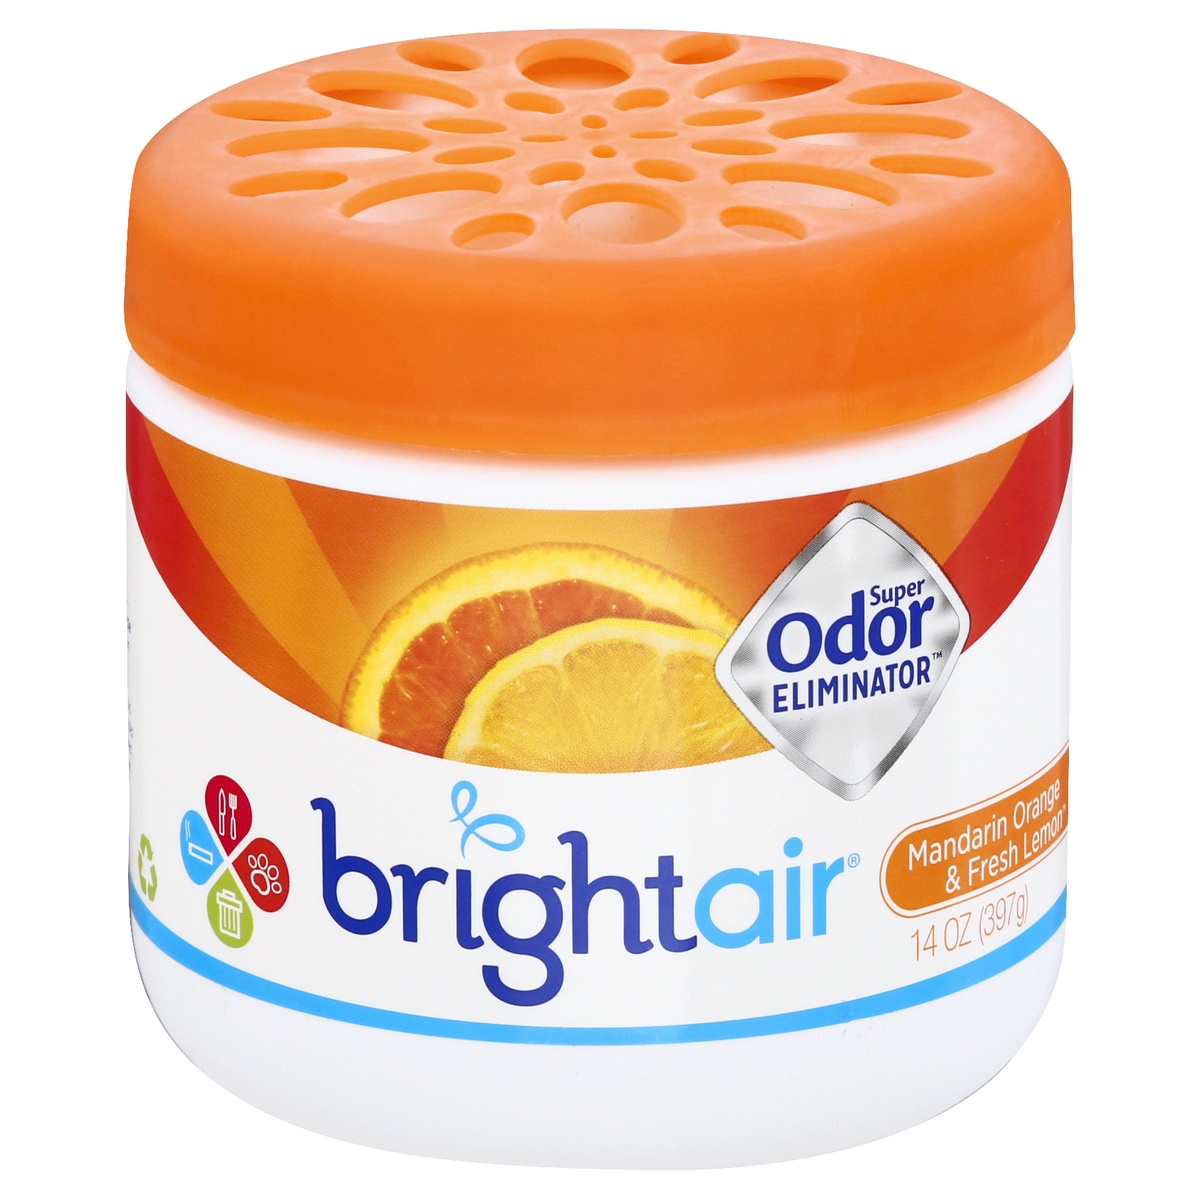 slide 1 of 1, Bright Air Super Odor Eliminator - Mandarin Orange and Fresh Lemon, 14 oz